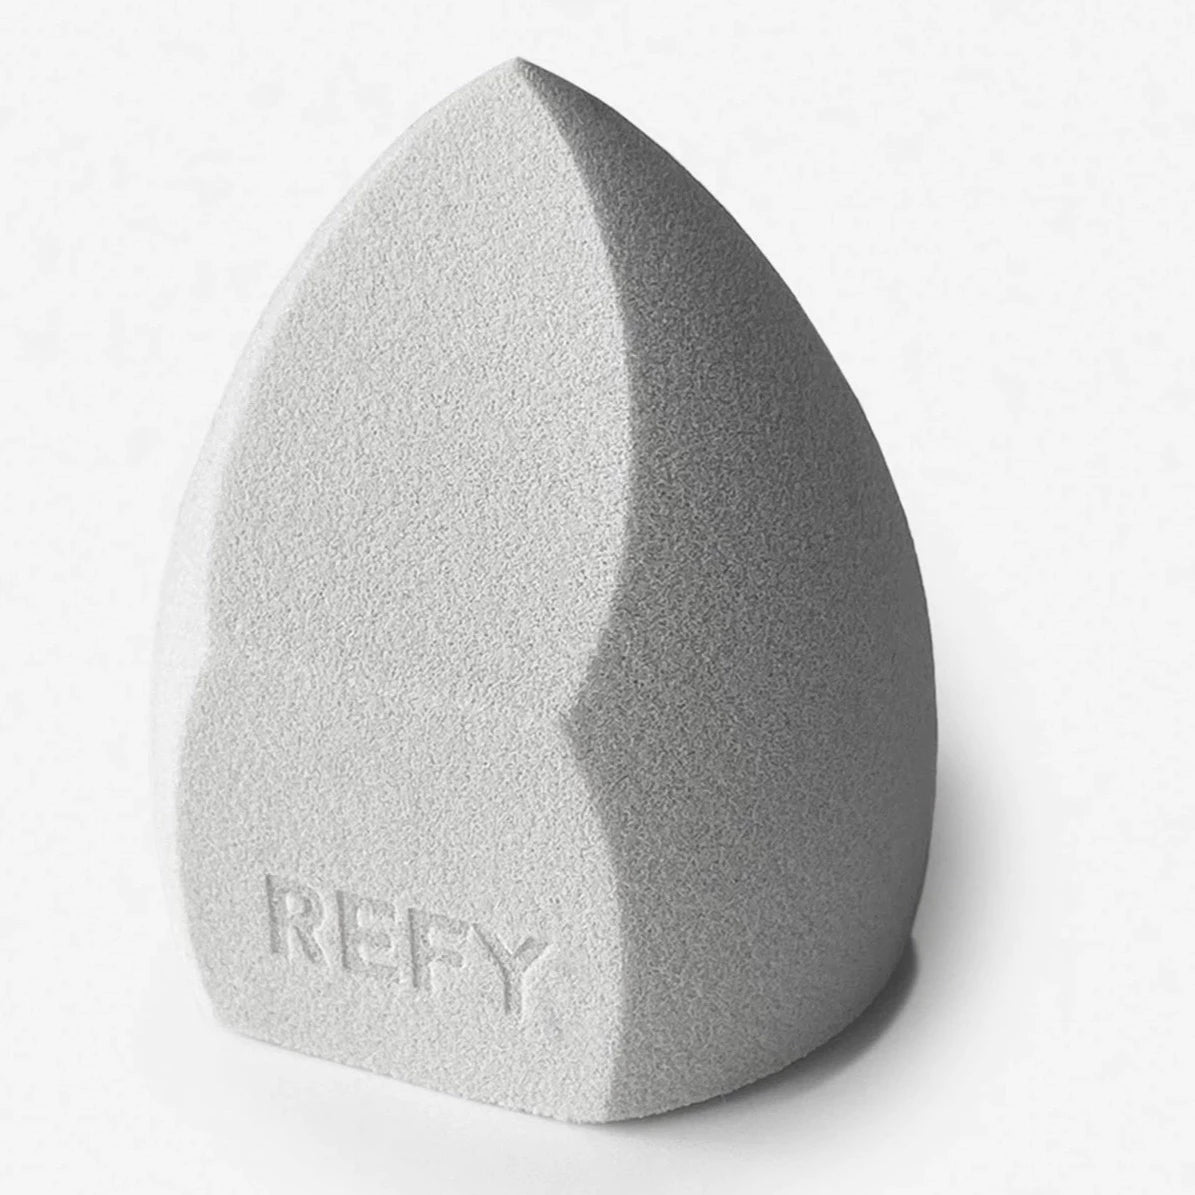 Refy - Beauty Sponge